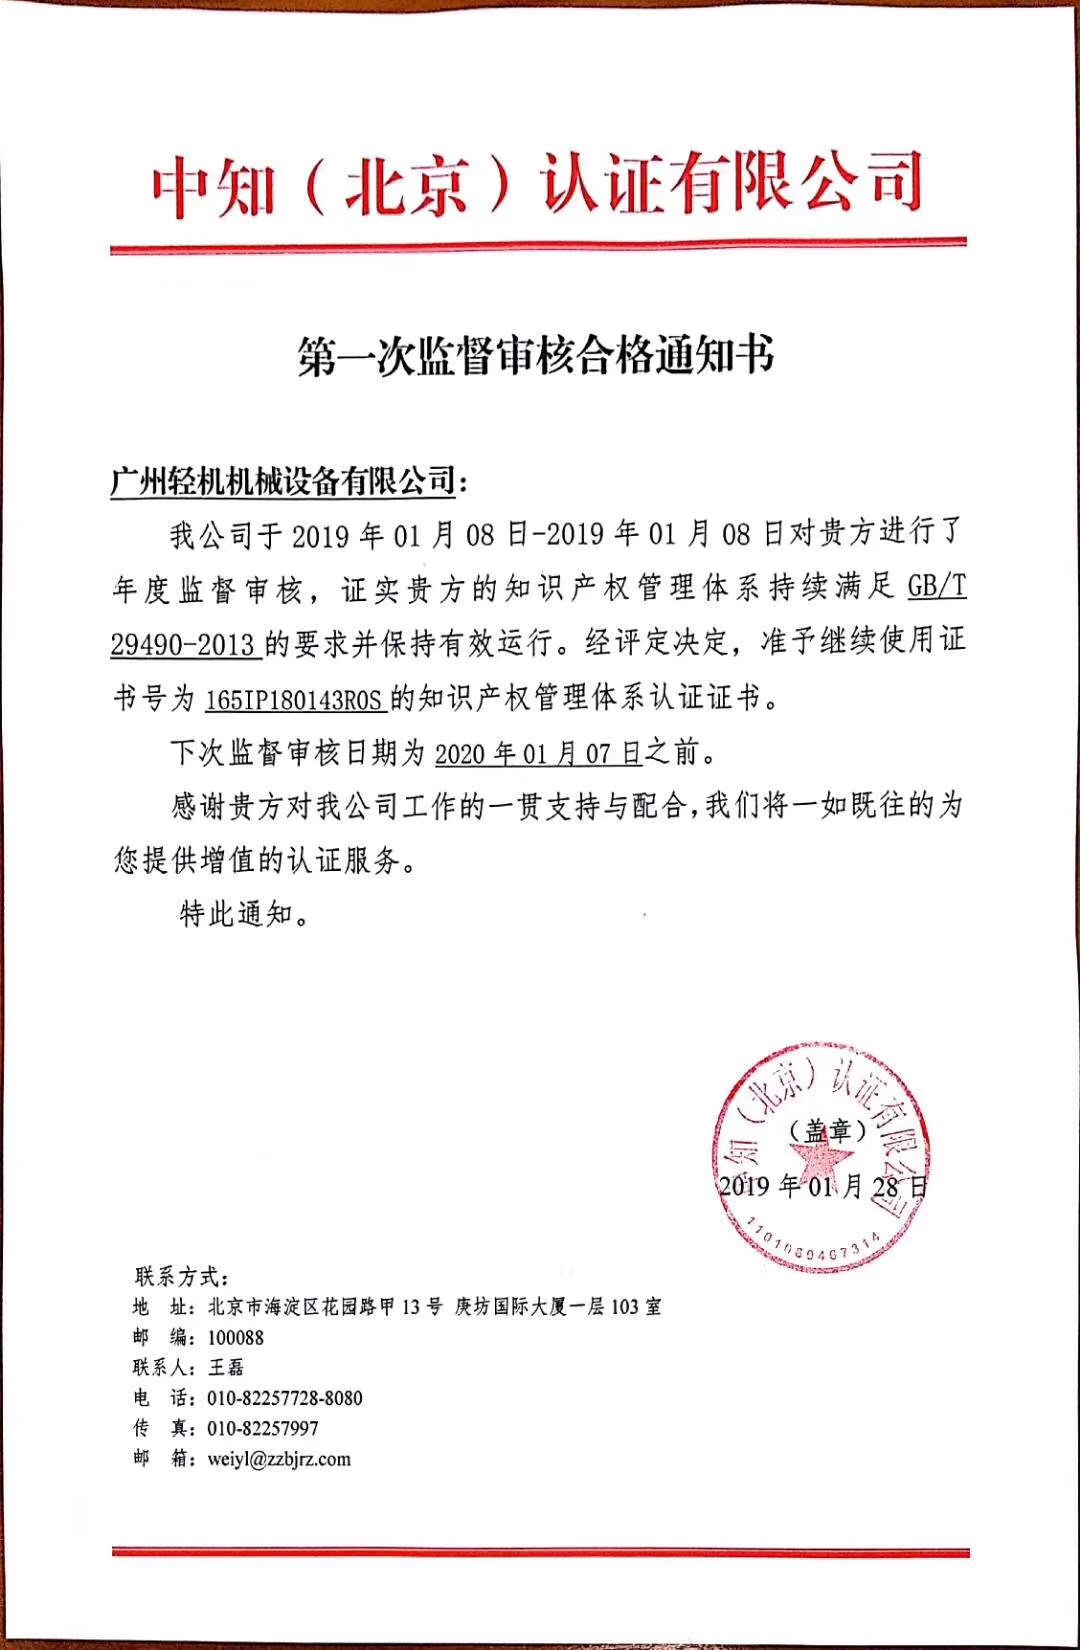 祝贺广州轻机获得由中知（北京）认证有限公司颂布的年度监督审核通过通知